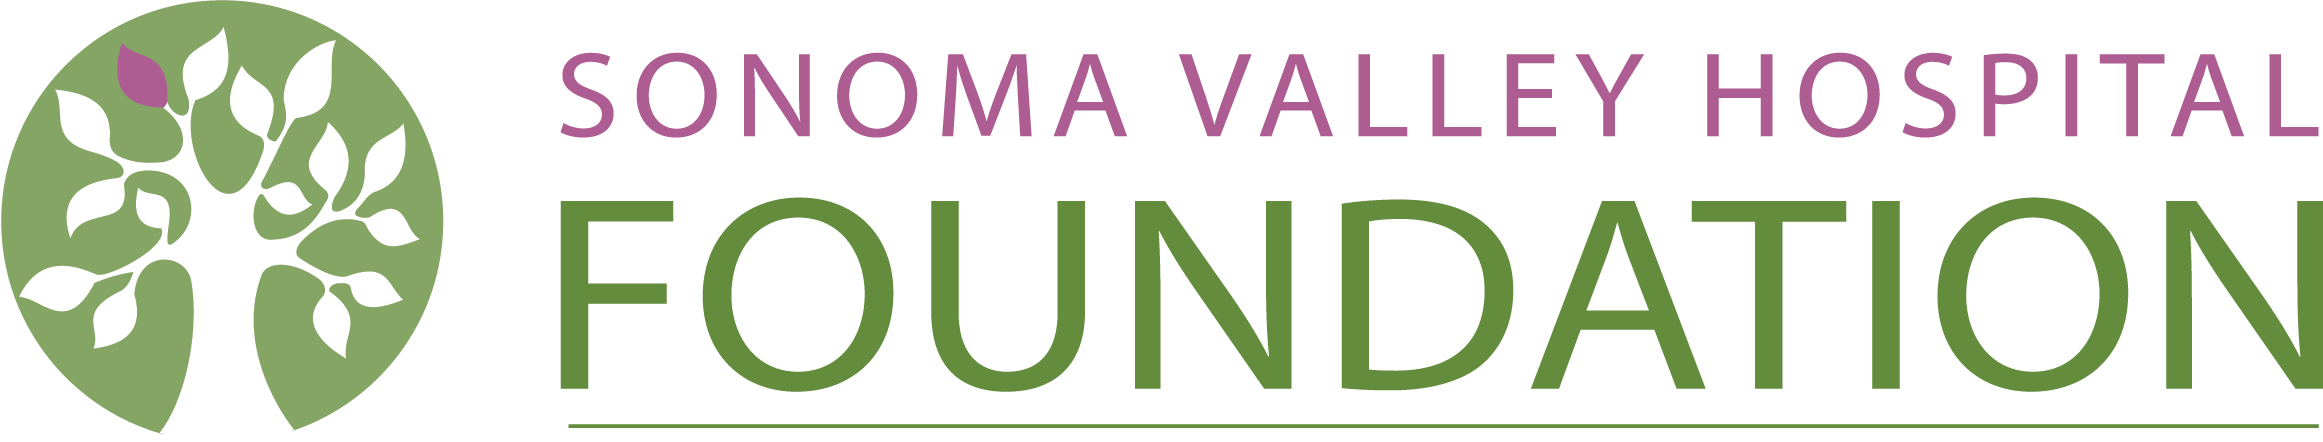 Sonoma Valley Hospital Foundation